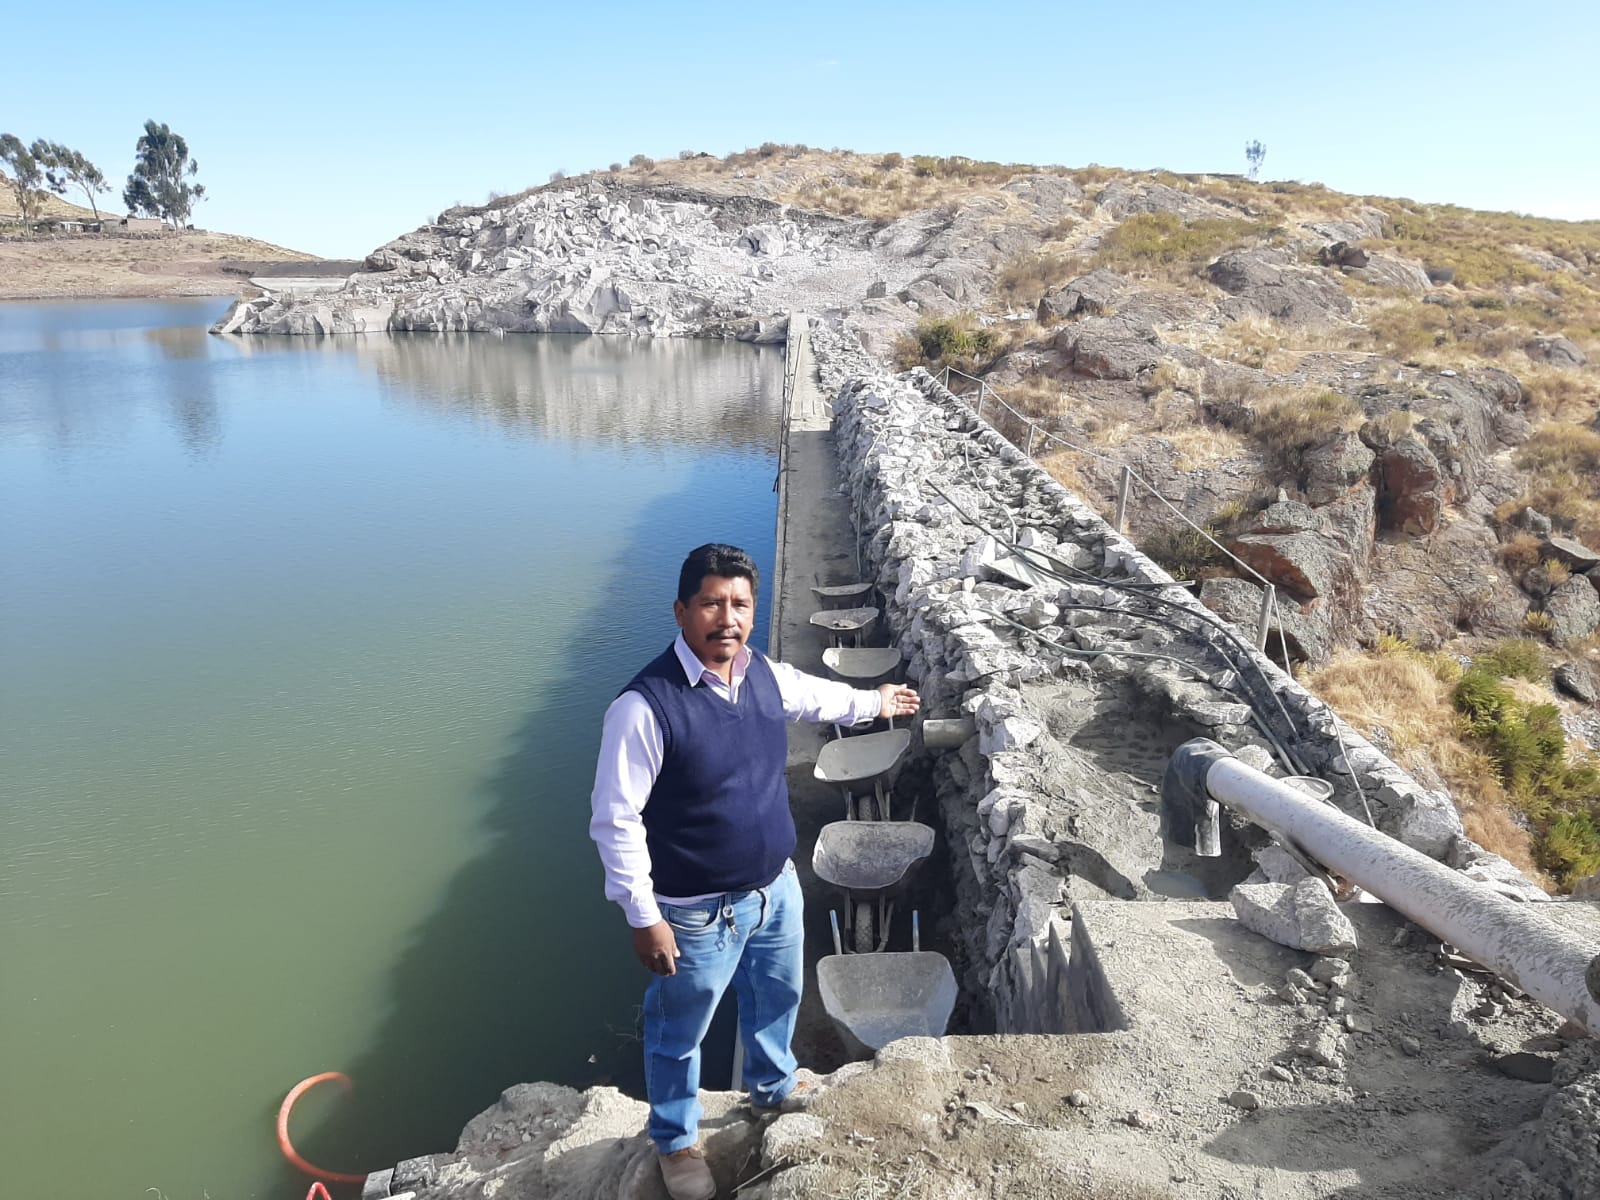 Pumasauli la represa que dio vida a toda una comunidad - Asociación UNACEM (7)